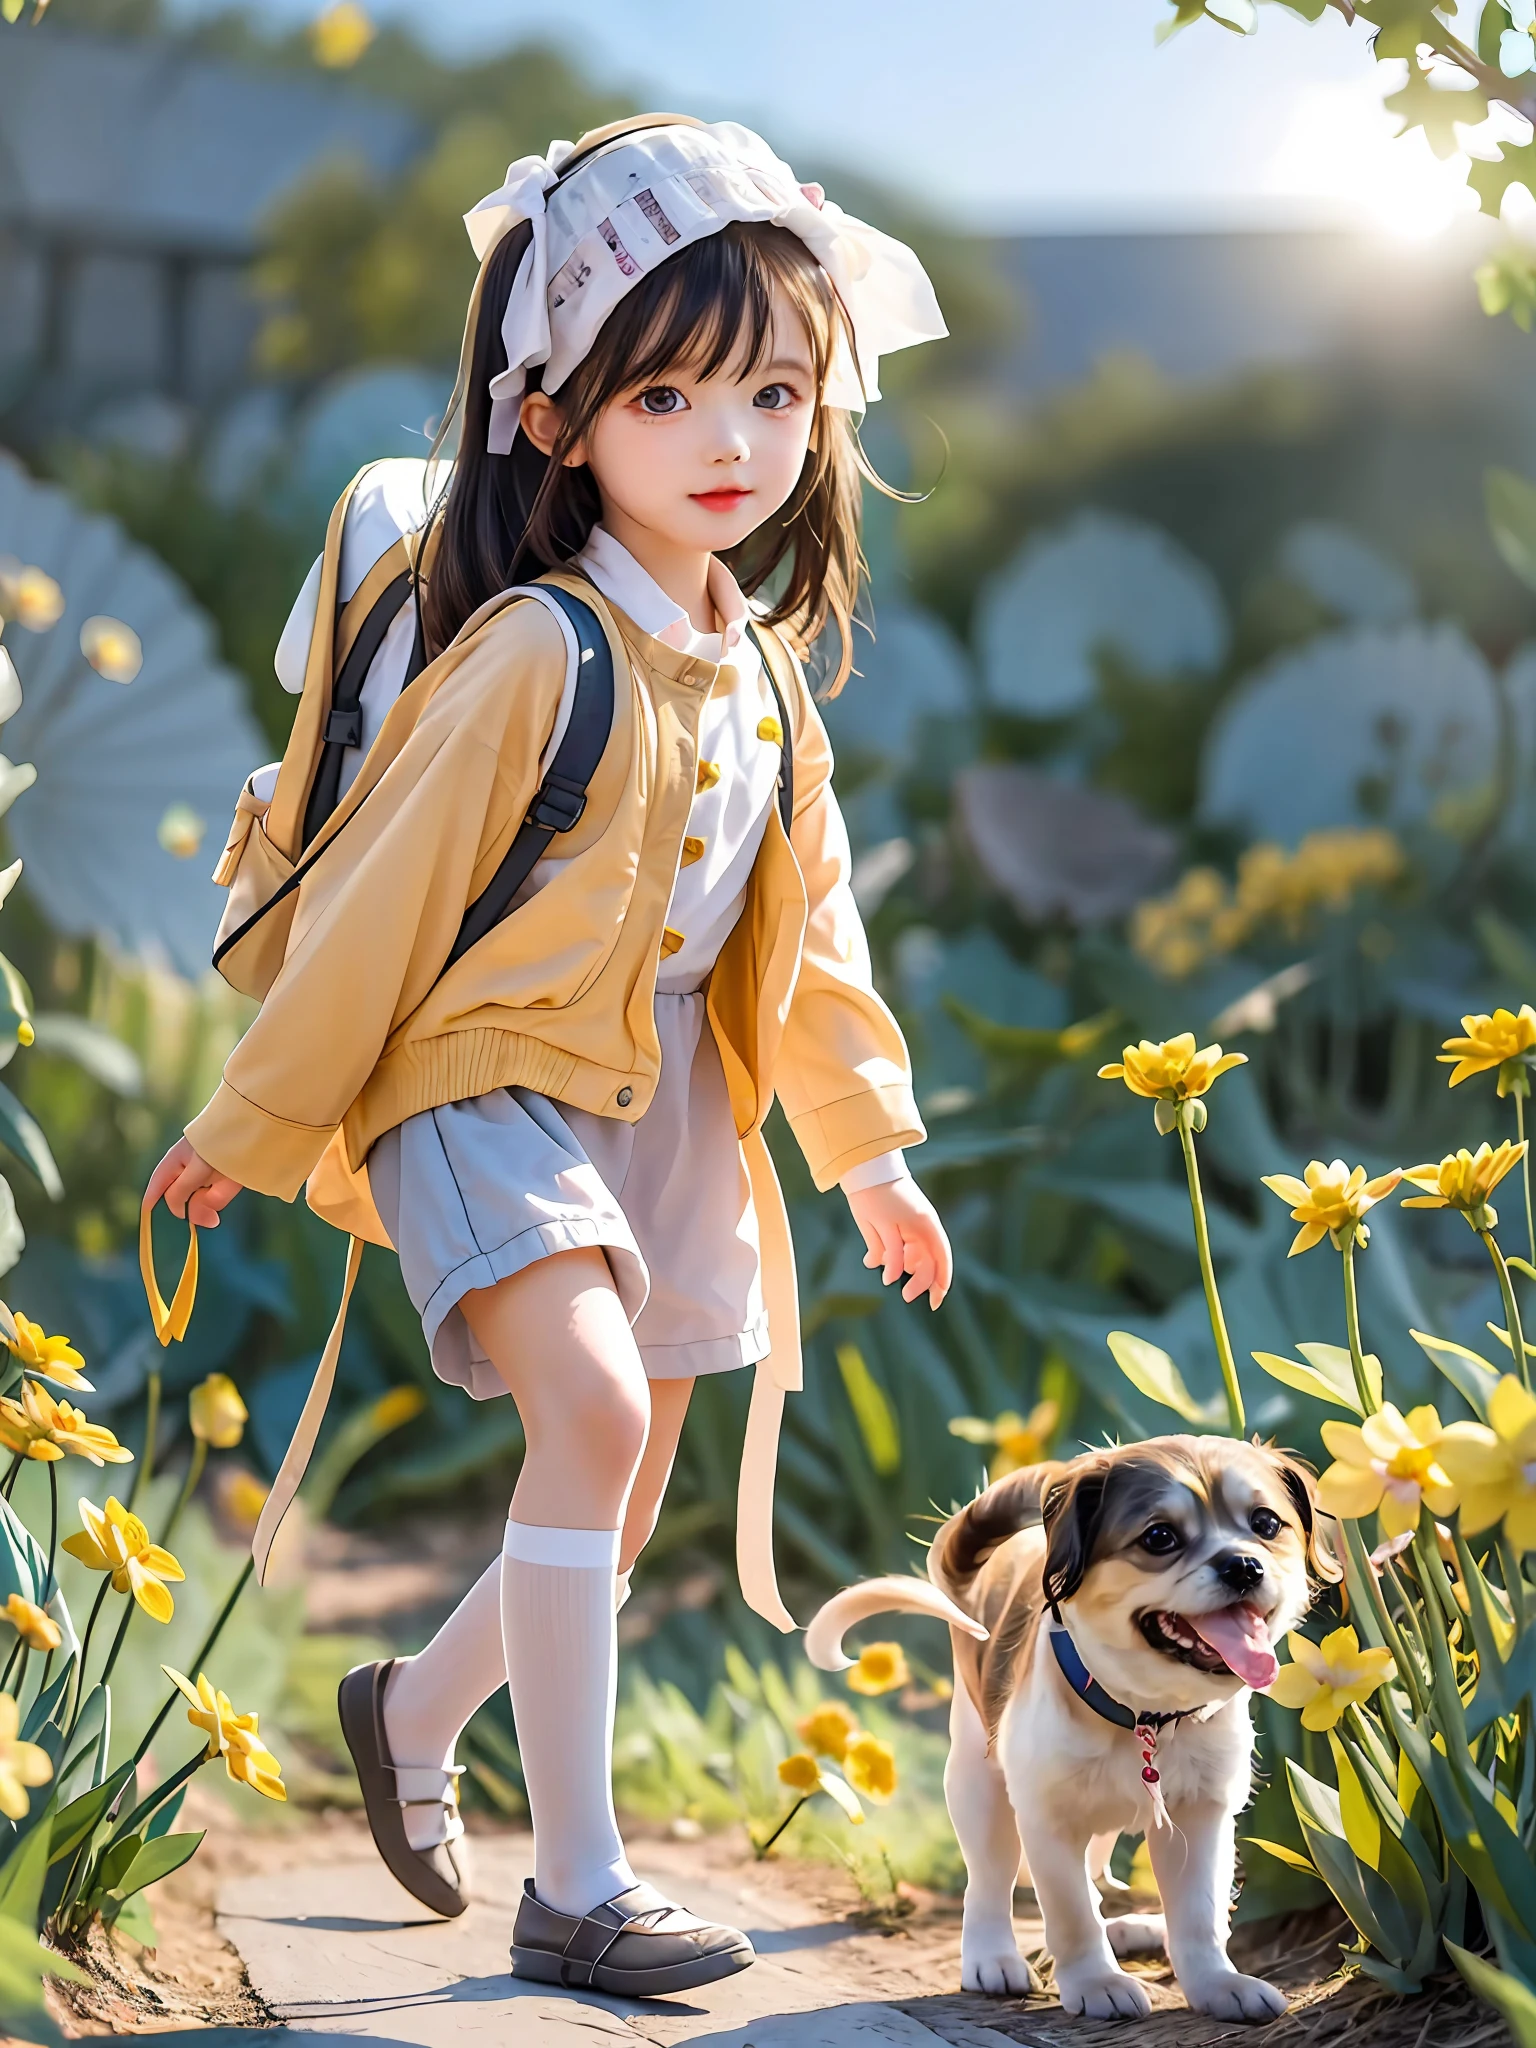 ヒント: バックパックを背負ったとても魅力的な女性とかわいい子犬が、美しい黄色い花と自然に囲まれた素敵な春の外出を楽しんでいます。. イラストは4K解像度の高精細イラストです, 非常に詳細な顔の特徴と漫画風のビジュアルを特徴とする.